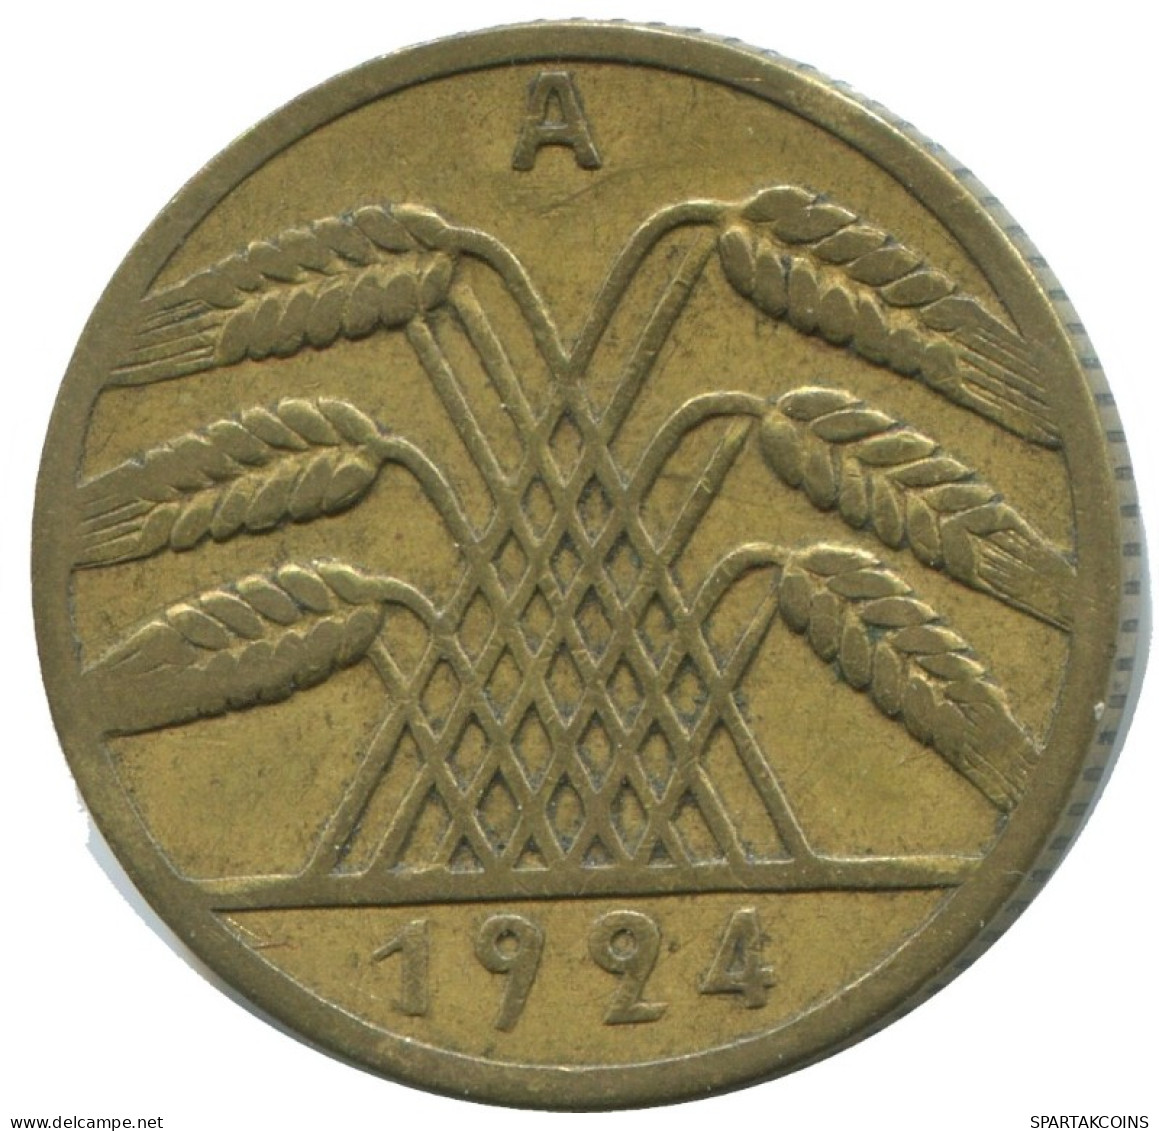 10 RENTENPFENNIG 1924 A DEUTSCHLAND Münze GERMANY #AD565.9.D.A - 10 Rentenpfennig & 10 Reichspfennig